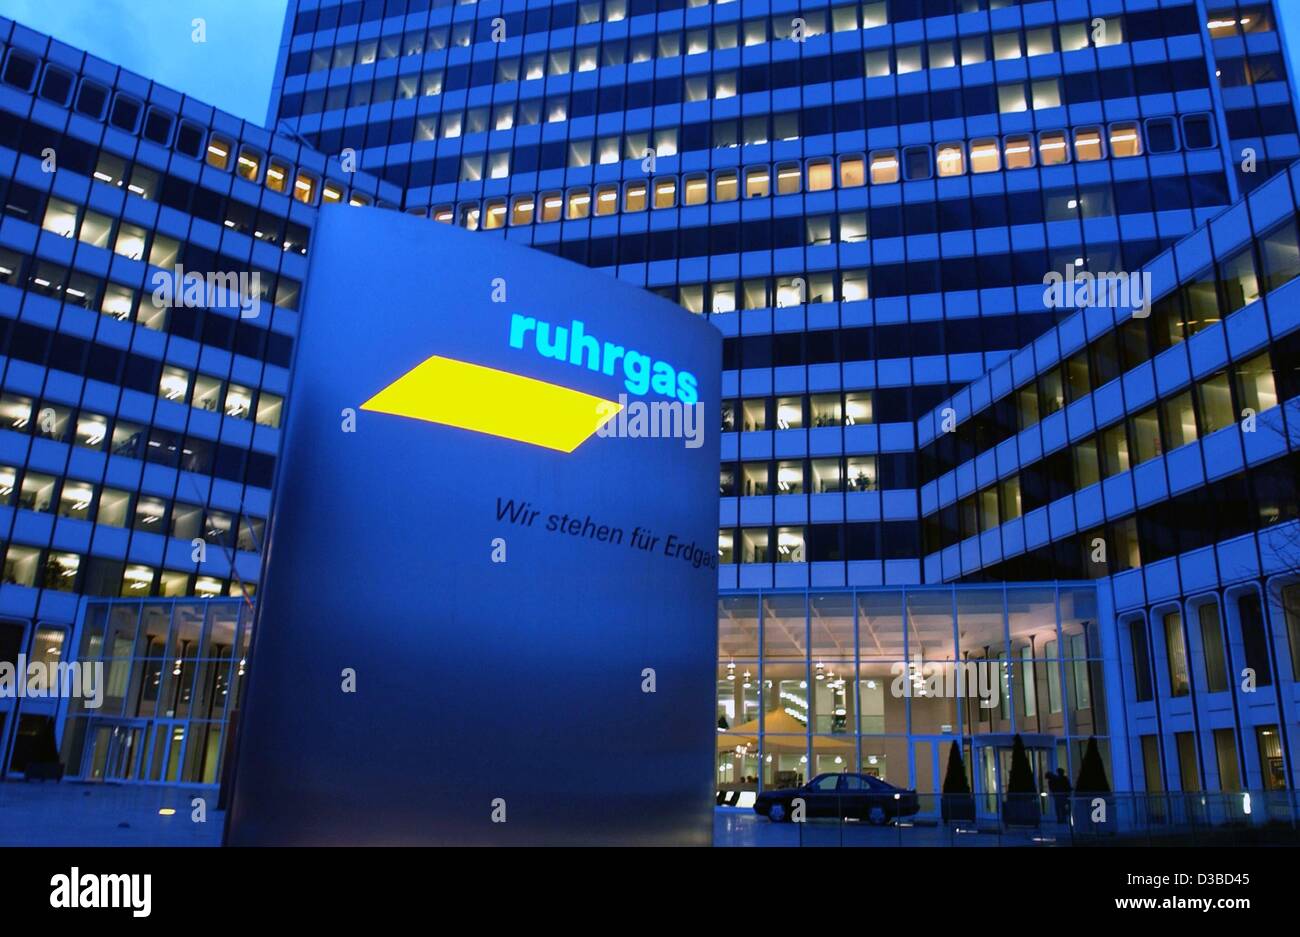 (Dpa) - die Ruhrgas-Dienstprogramm Sitz und Firma Firmenschild sind in Essen, 28. Januar 2003 an einem klaren späten Abend fotografiert.  Die Firma Schild "Wir Stehen Fuer Erdgas" ("Wir stehen für Natural Gas").  Zeit ist für die elektrische Energieversorger E.ON, der potenzielle Käufer von knapp Stockfoto